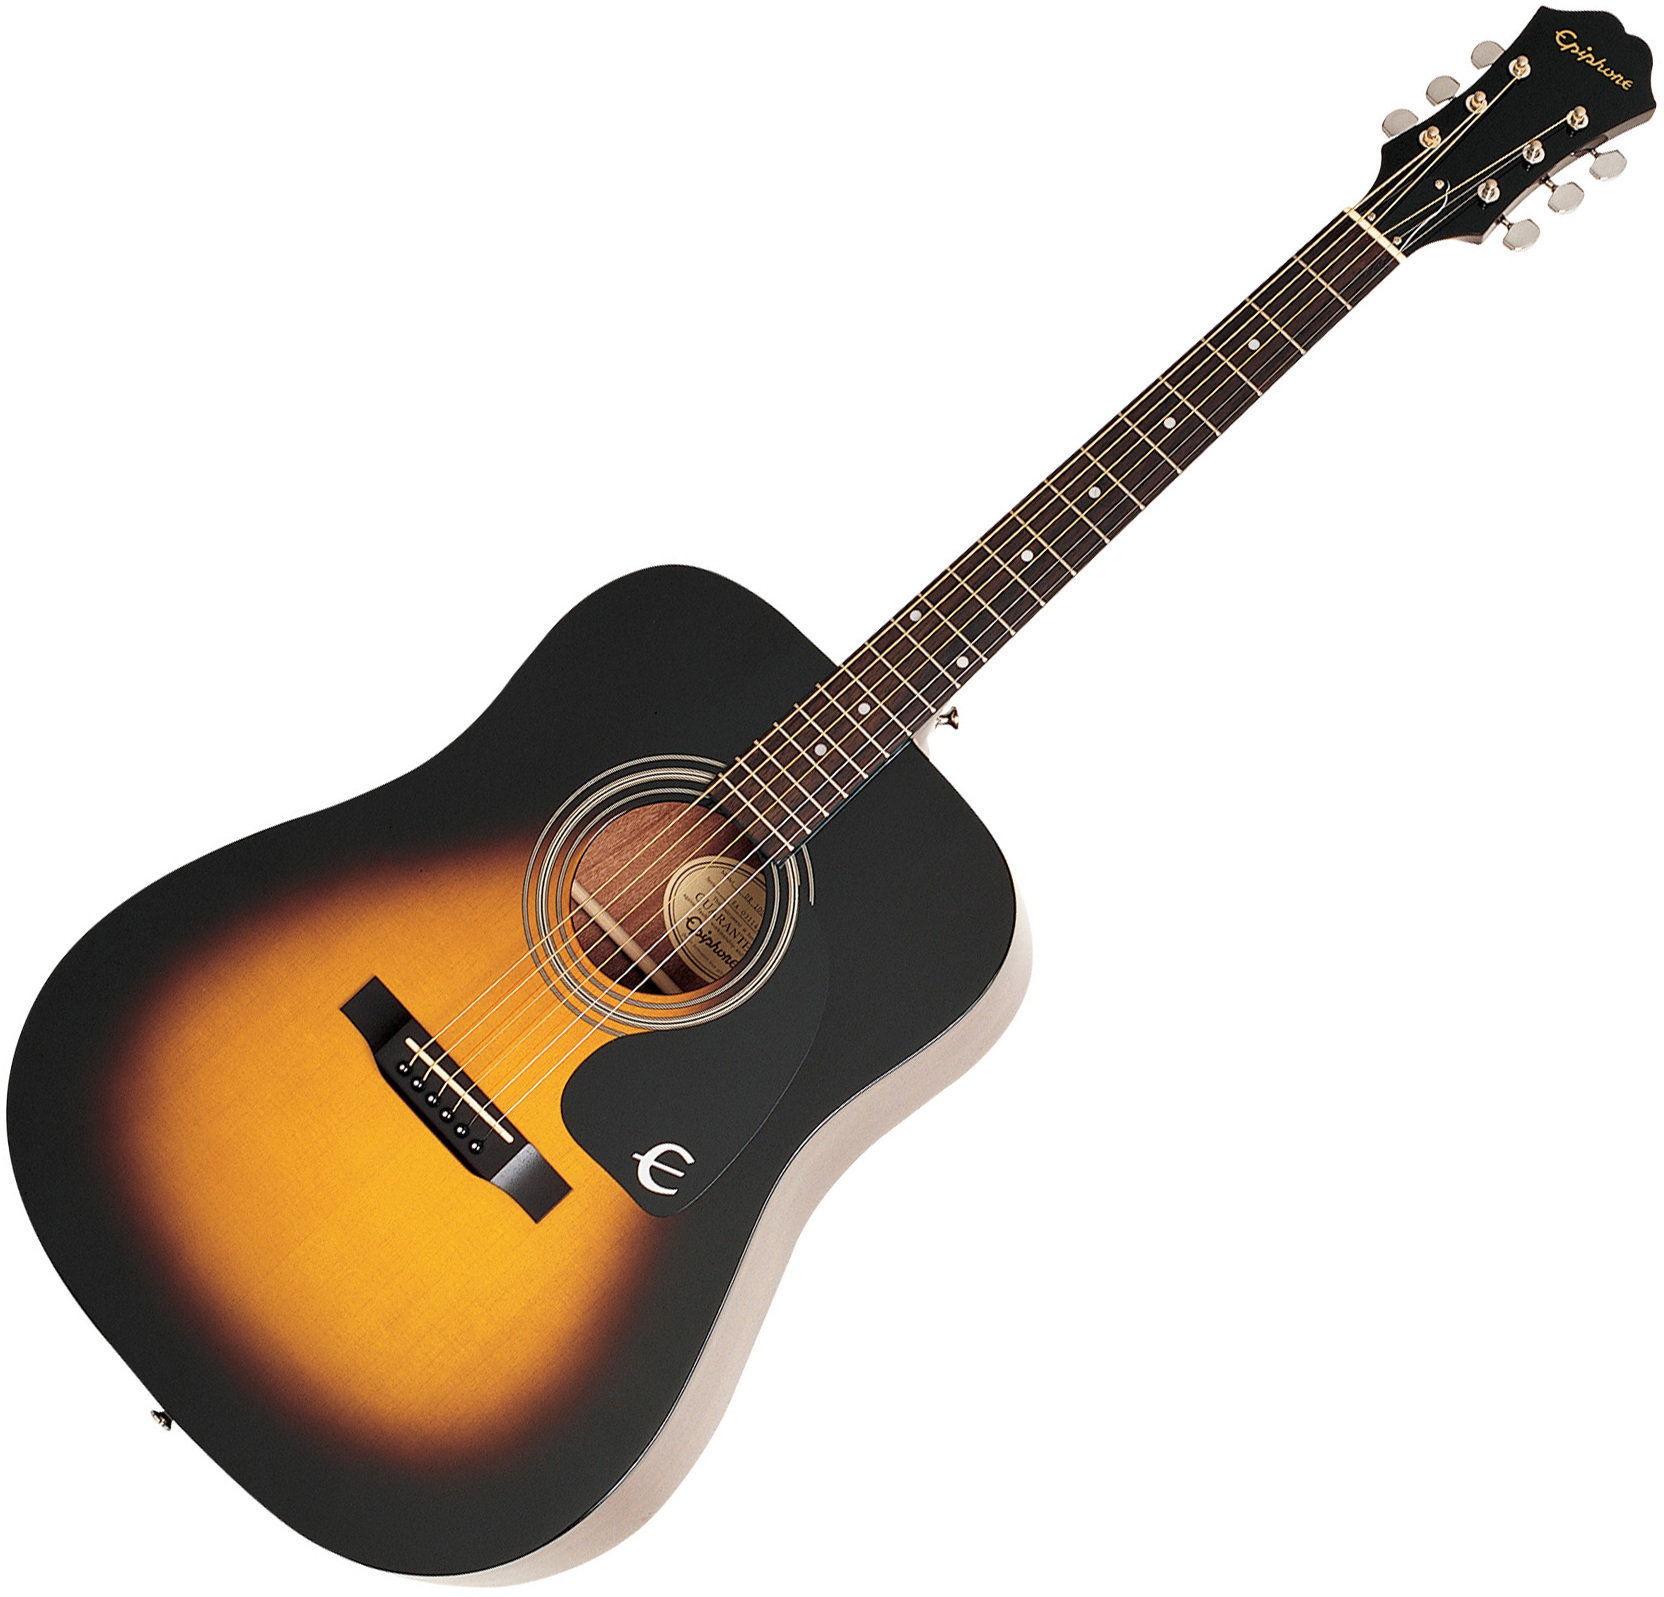 Akustična gitara Epiphone DR-220S VS